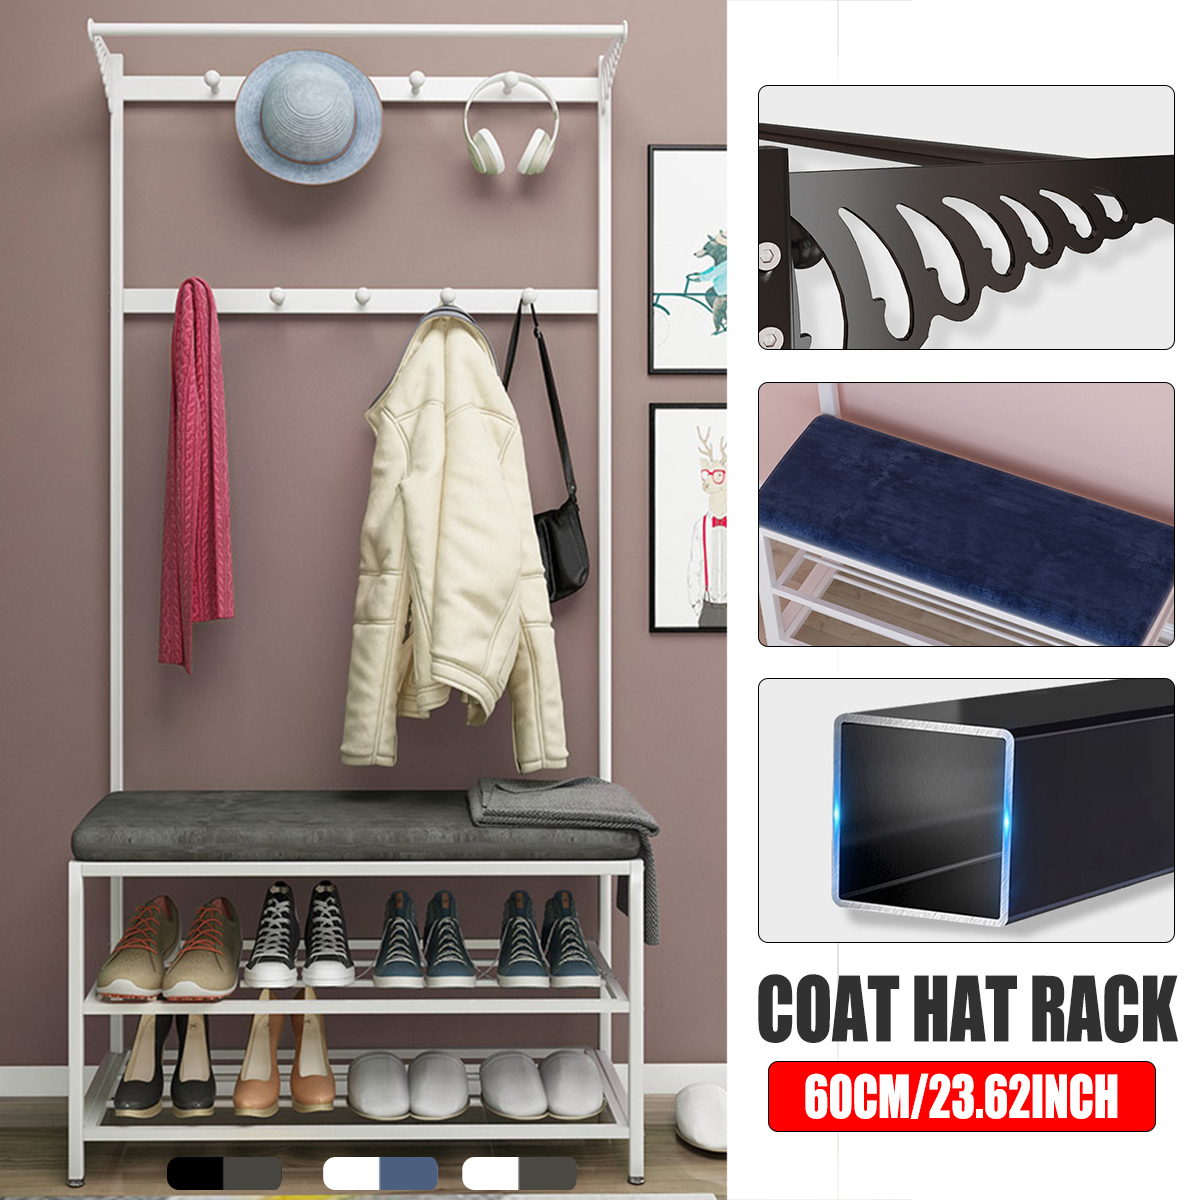 60cm-Coat-Rack-Shoe-Rack-Multifunctional-Storage-Bench-Door-Hat-Clothes-Umbrella-Hangers-Storage-She-1787865-1